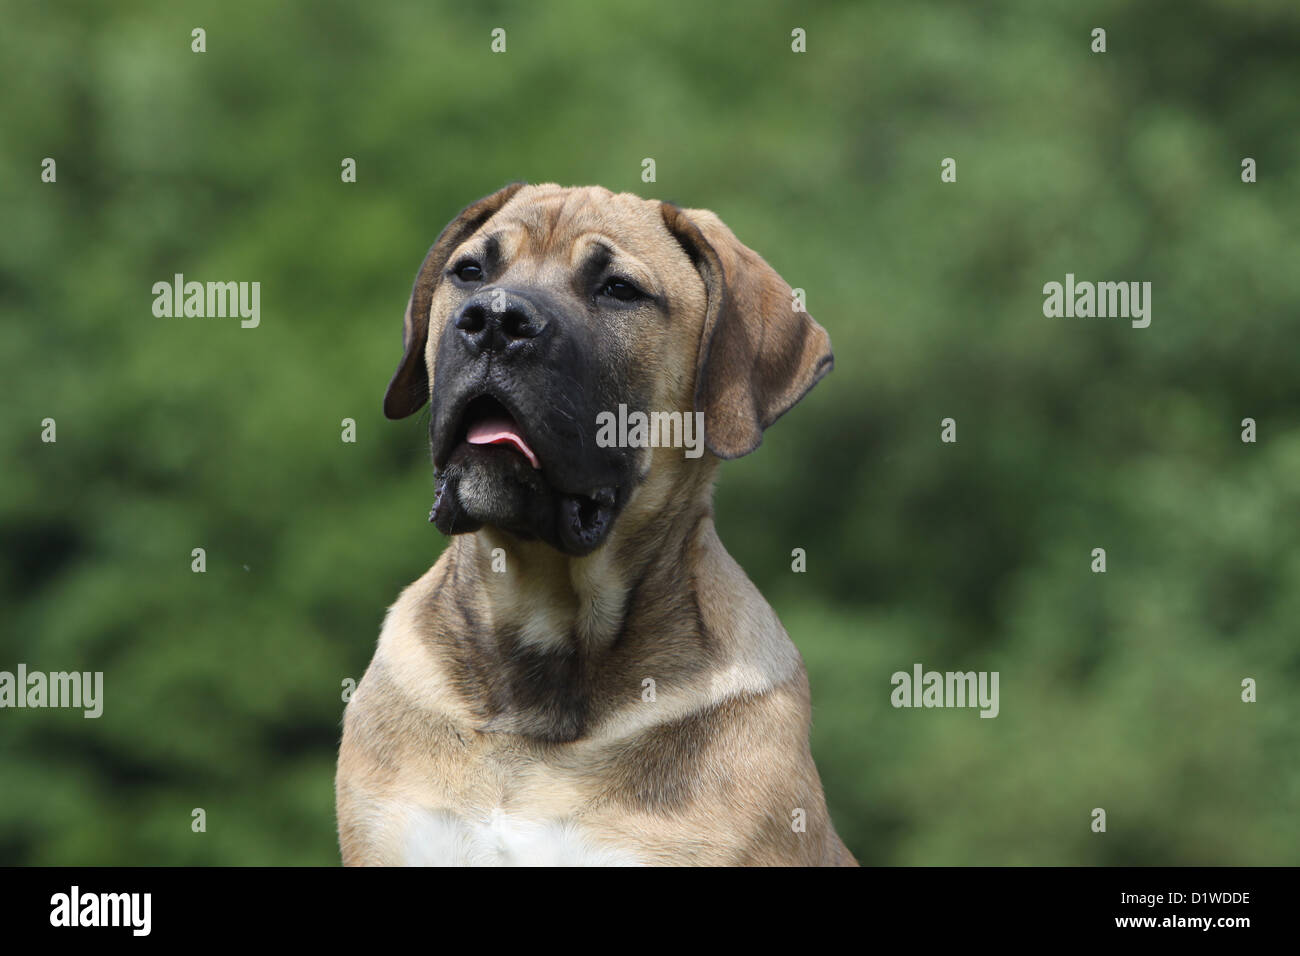 Boerboel Boerbull / chien / Mastiff puppy portrait de l'Afrique du Sud Banque D'Images